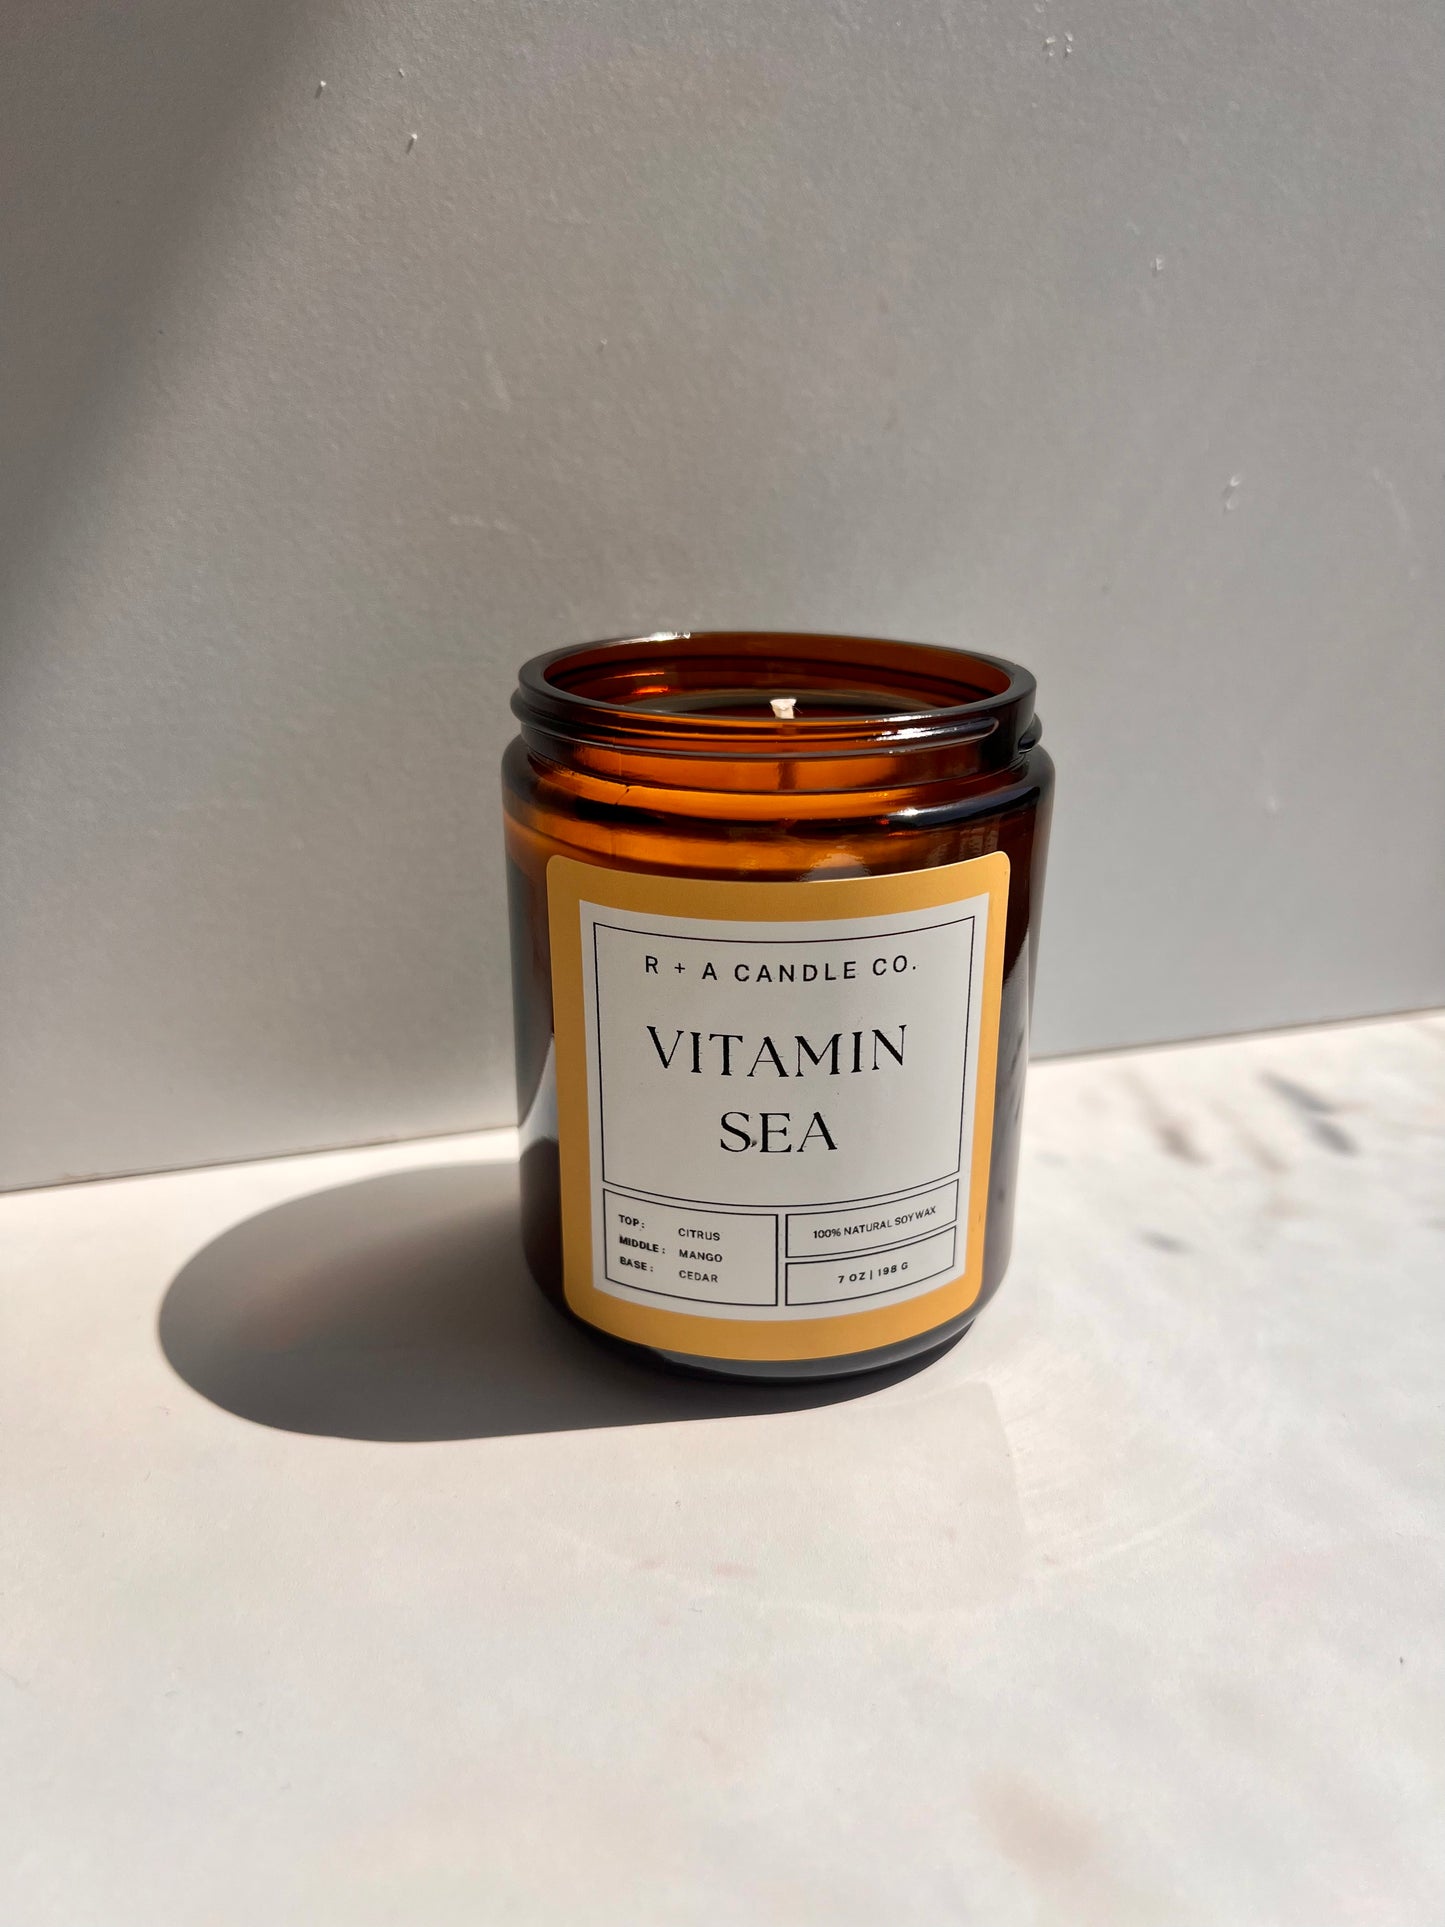 Vitamin Sea